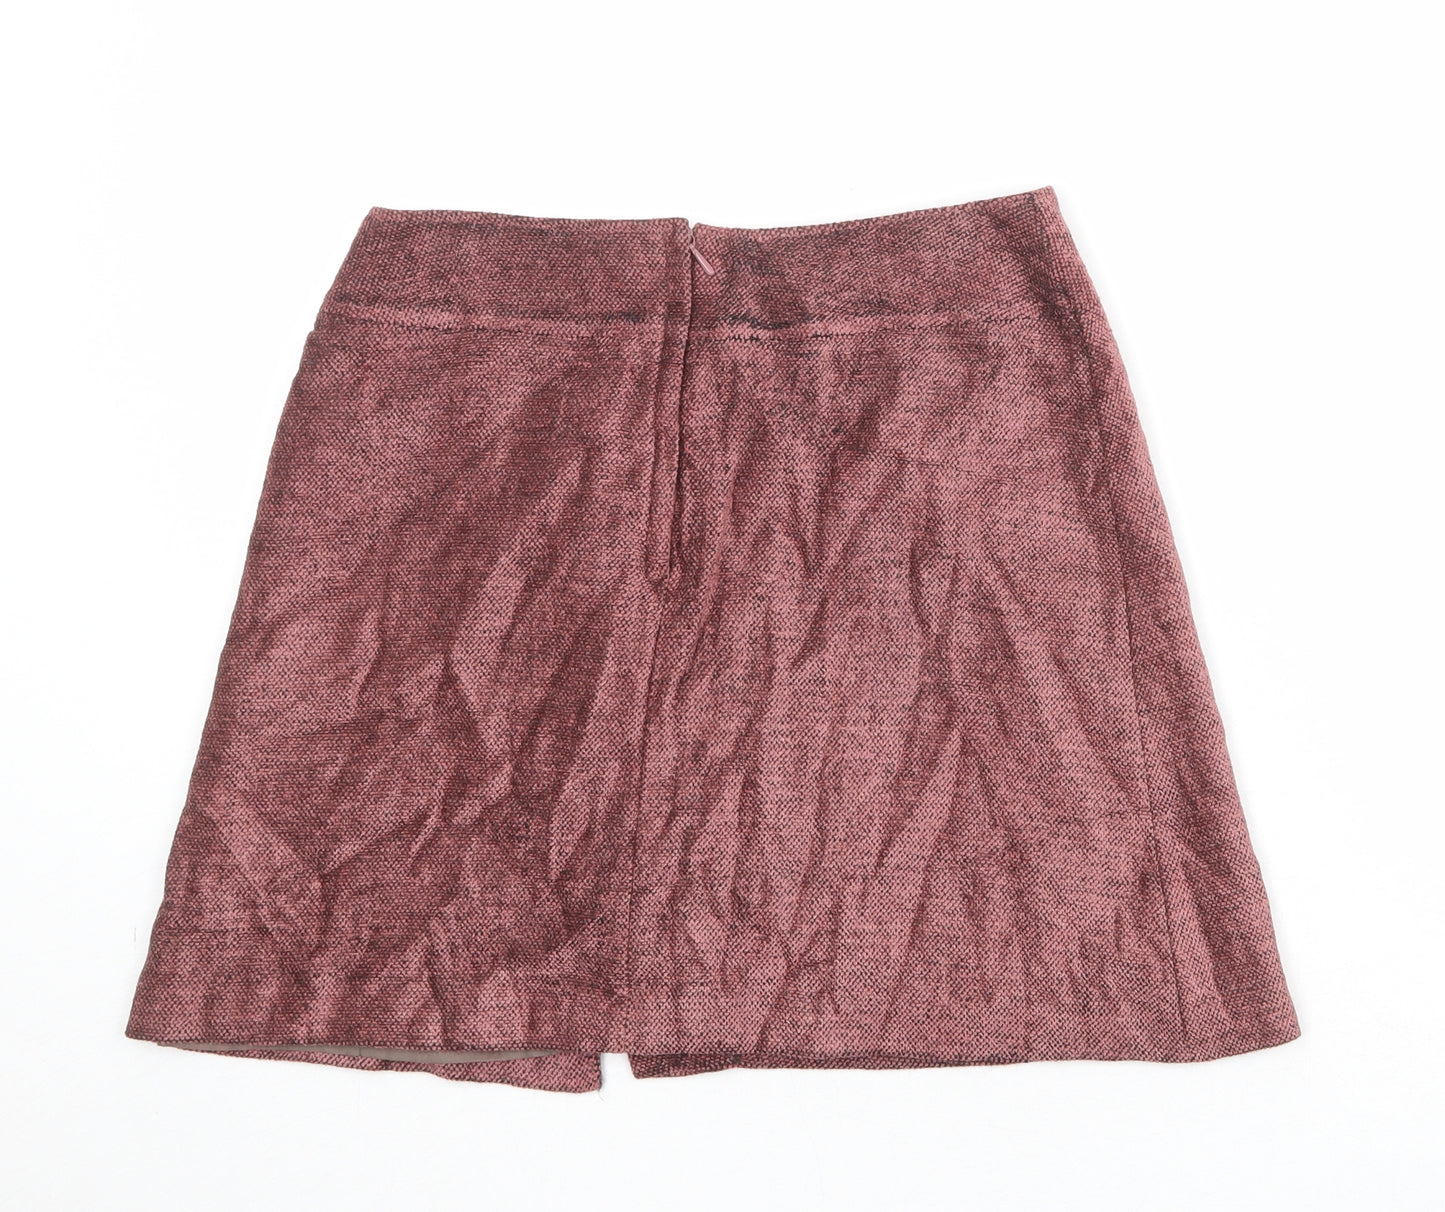 St Michael Womens Pink Wool A-Line Skirt Size 12 Zip